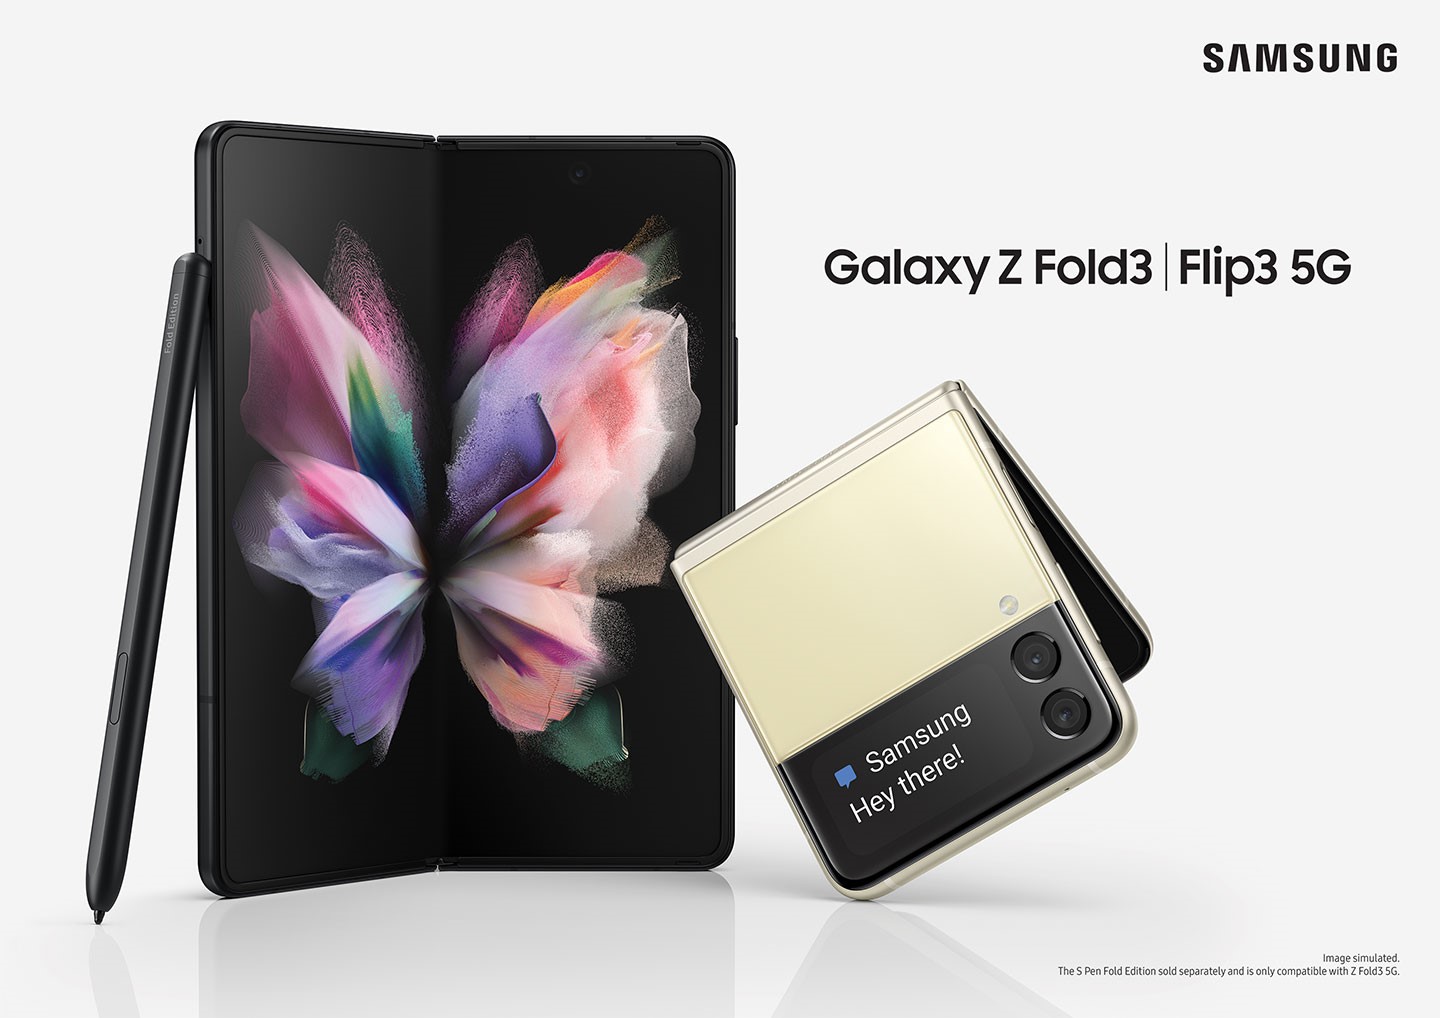 可摺疊螢幕手機近兩年成為三星力推的新產品線，而去年的新旗艦 Galaxy Z Fold3 也式支援 S Pen，讓使用者能在更大的螢幕上享受書寫與繪畫的便利性（圖片來源：Samsung Mobile Press）。